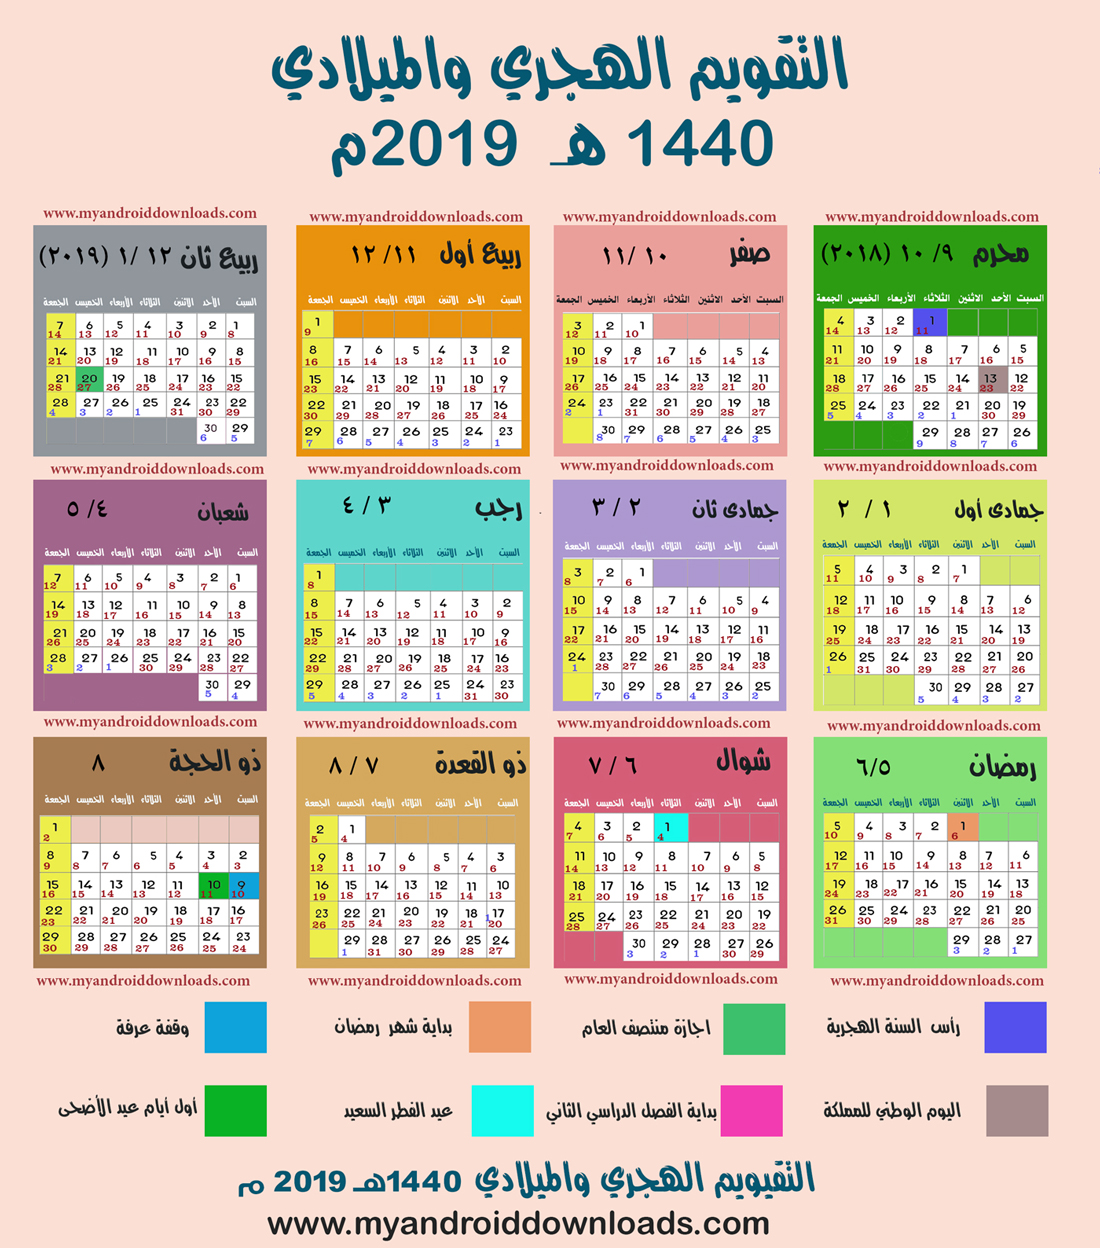 التقويم الهجري 1440 والميلادي 2019 مع تقويم خاص بالمناسبات الاسلامية.